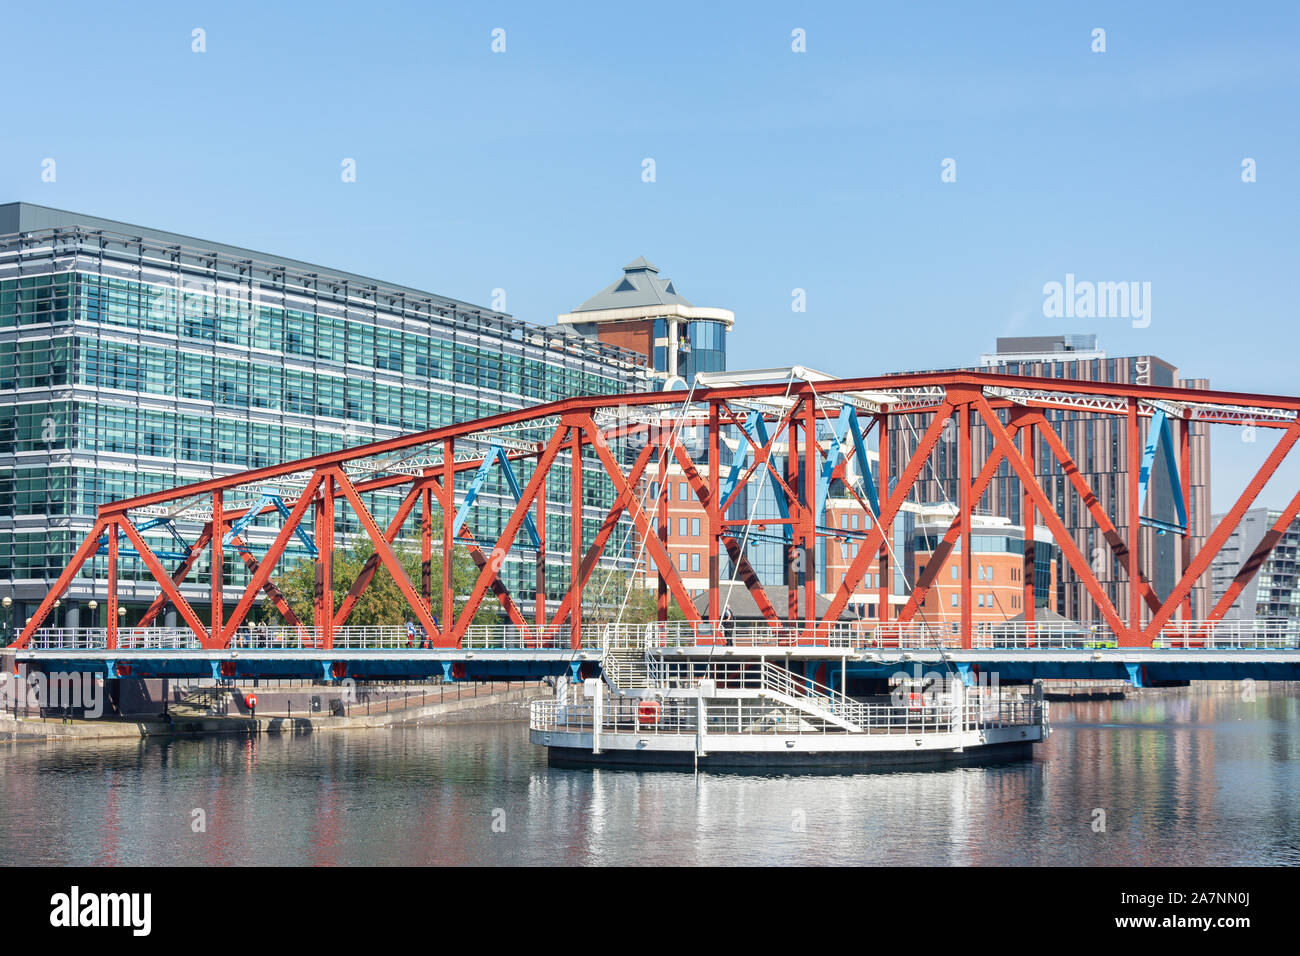 Pont à poutre triangulée à Huron Basin, Salford Quays, Salford, Greater Manchester, Angleterre, Royaume-Uni Banque D'Images